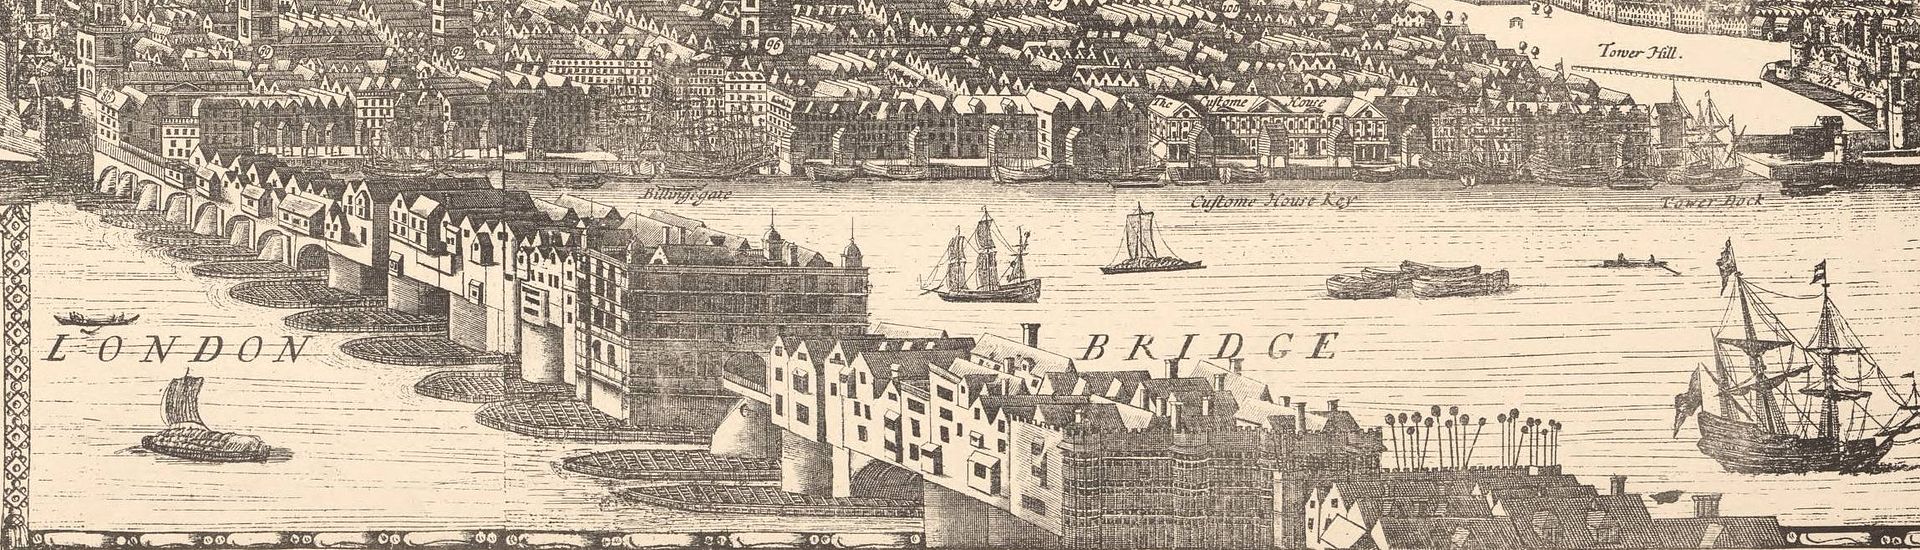 London Bridge 1682